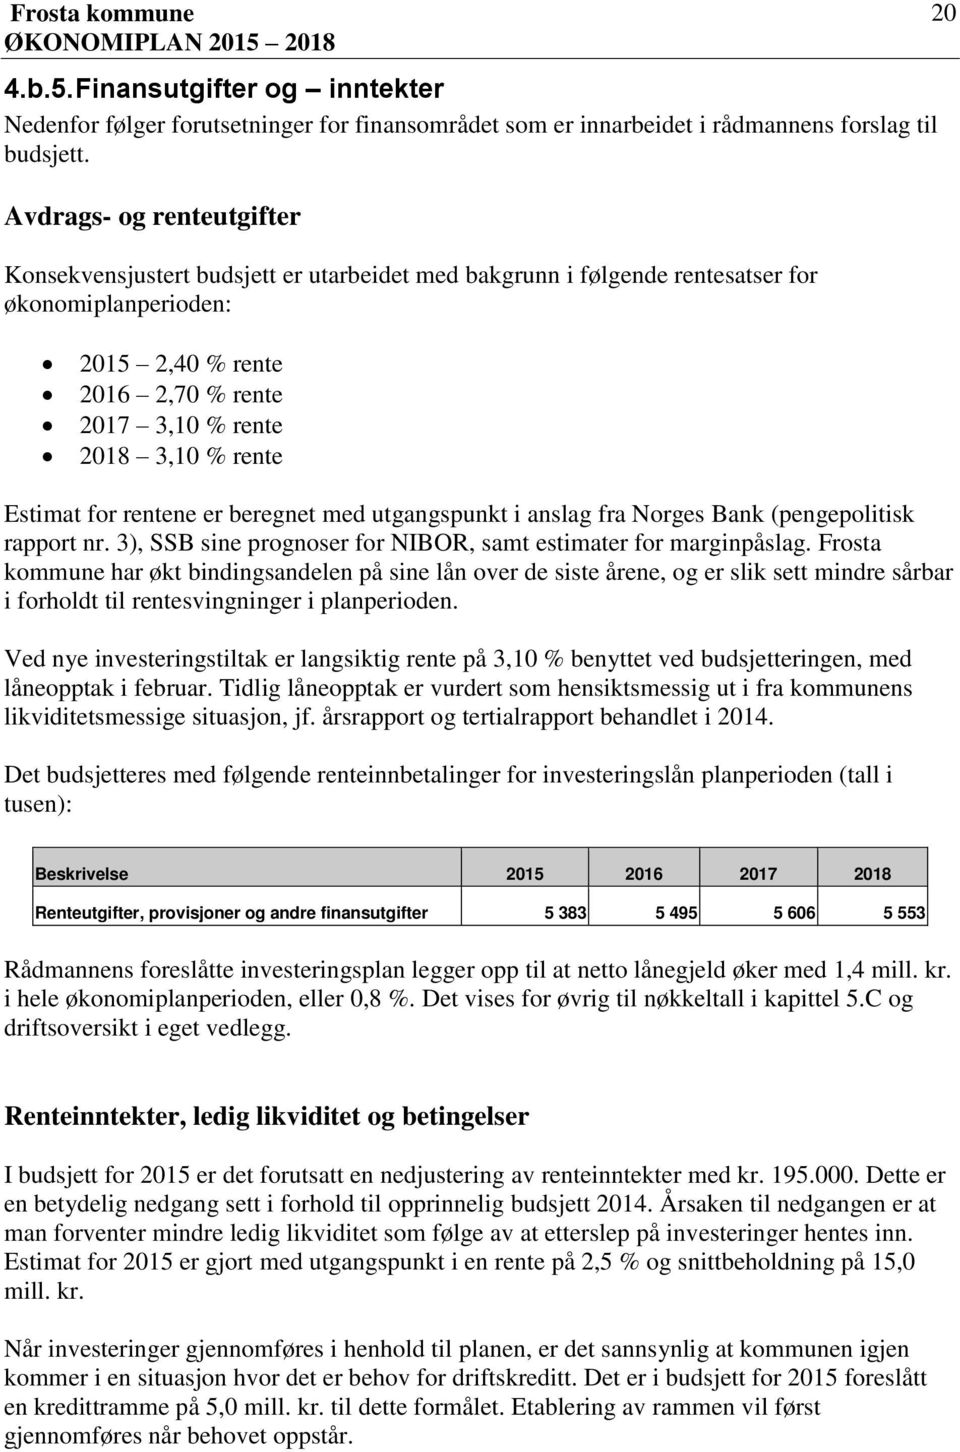 Estimat for rentene er beregnet med utgangspunkt i anslag fra Norges Bank (pengepolitisk rapport nr. 3), SSB sine prognoser for NIBOR, samt estimater for marginpåslag.